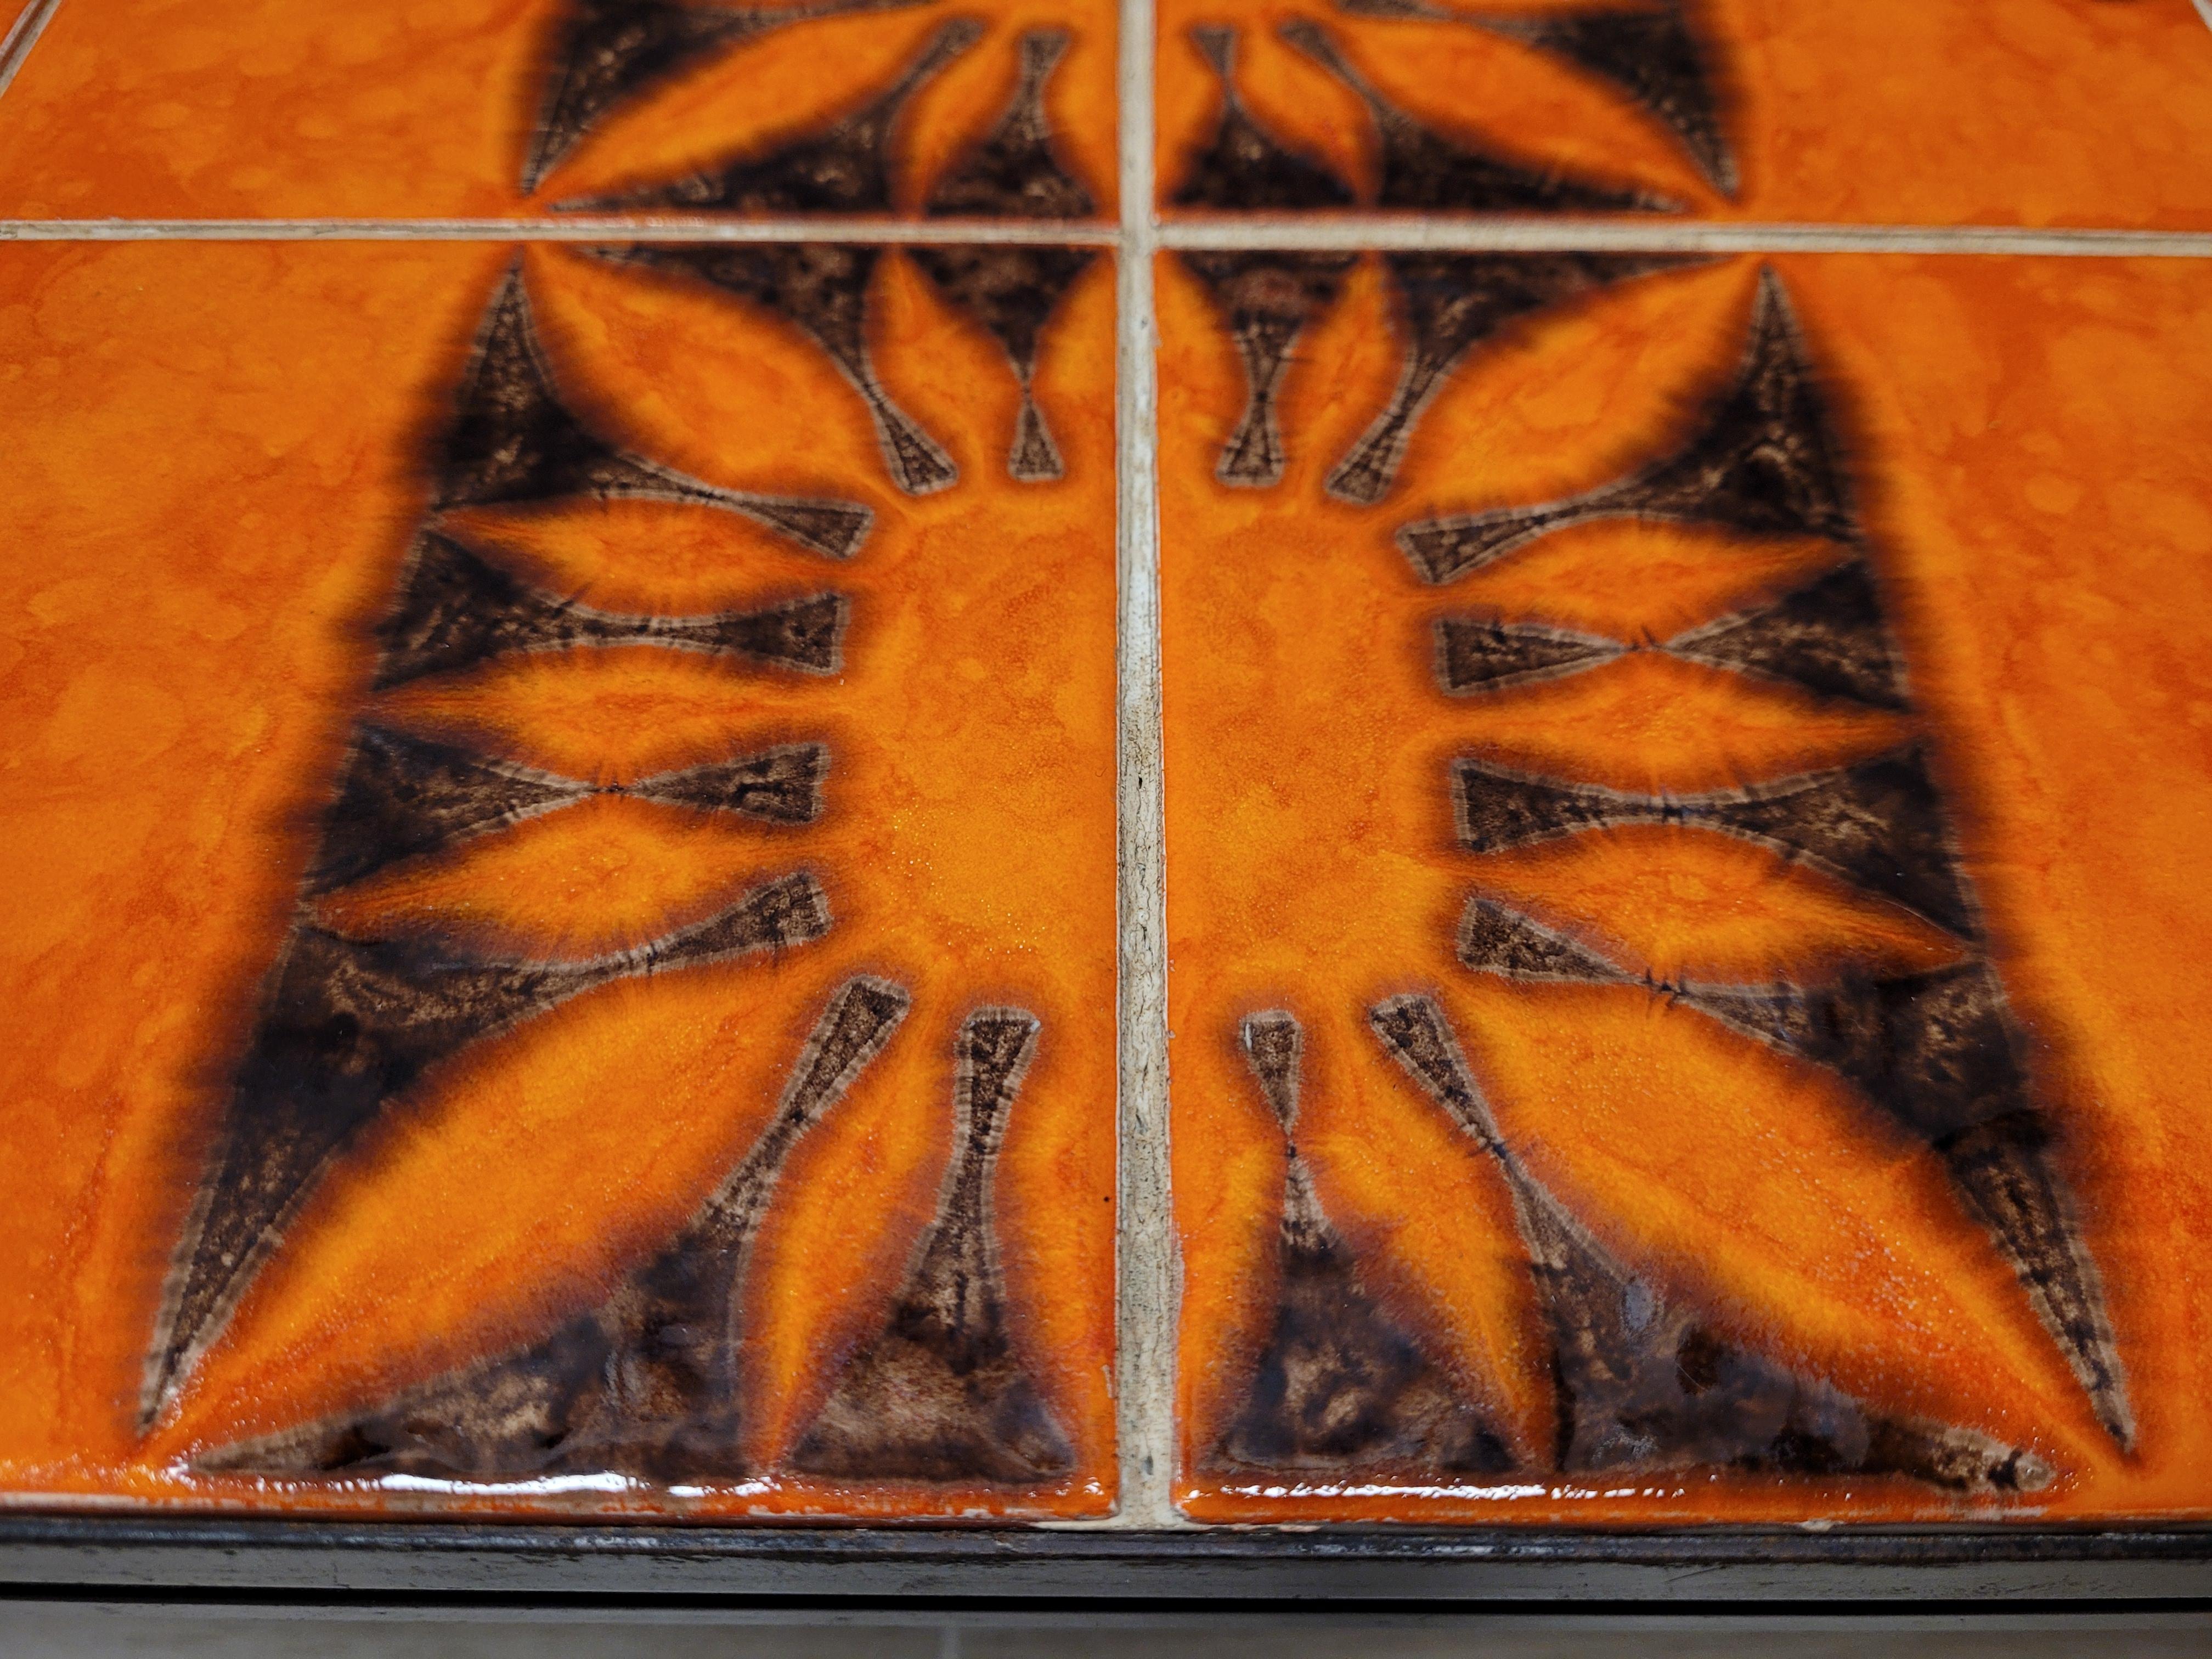 Céramique Capron Vallauris orange et noire - Céramique française - Coffetable  6